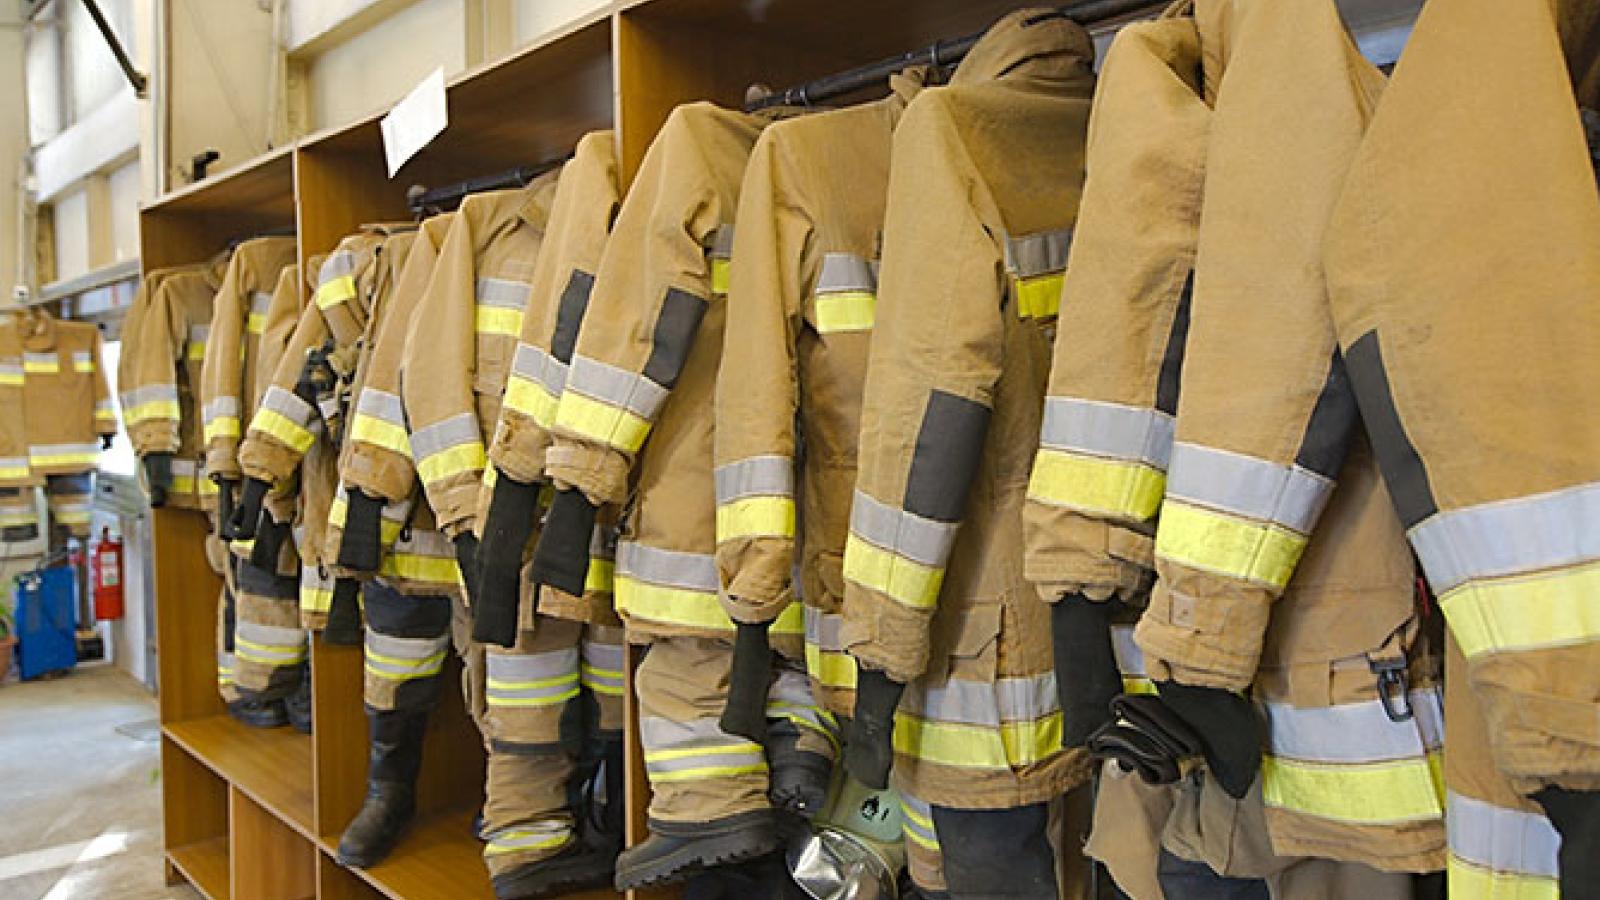 Firefighter uniforms